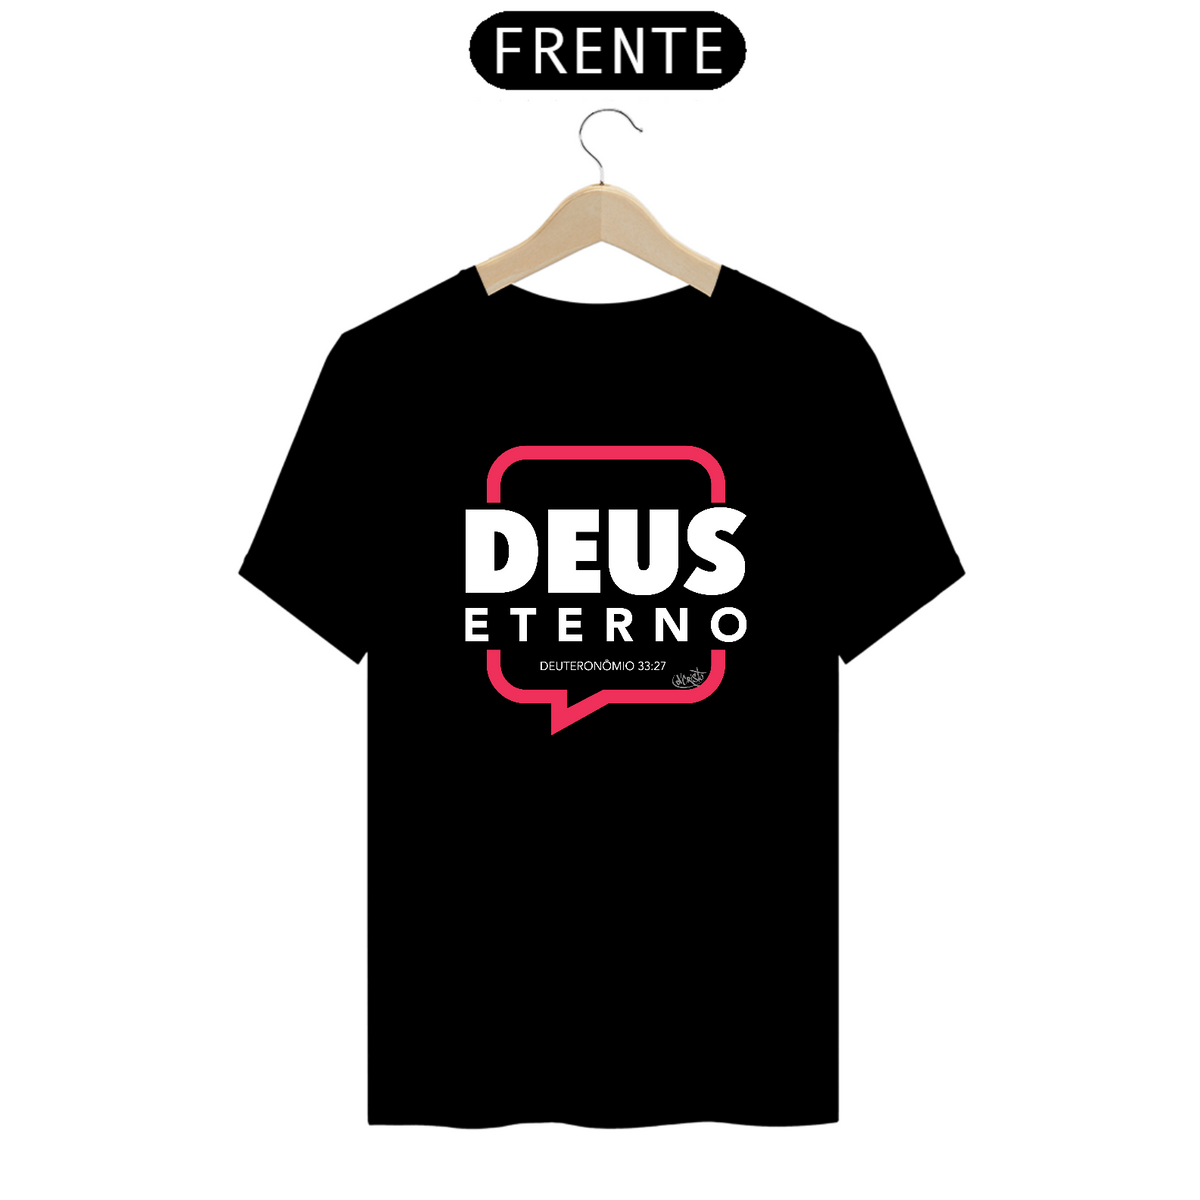 Nome do produto: Camiseta Deus Eterno (cores escuras)